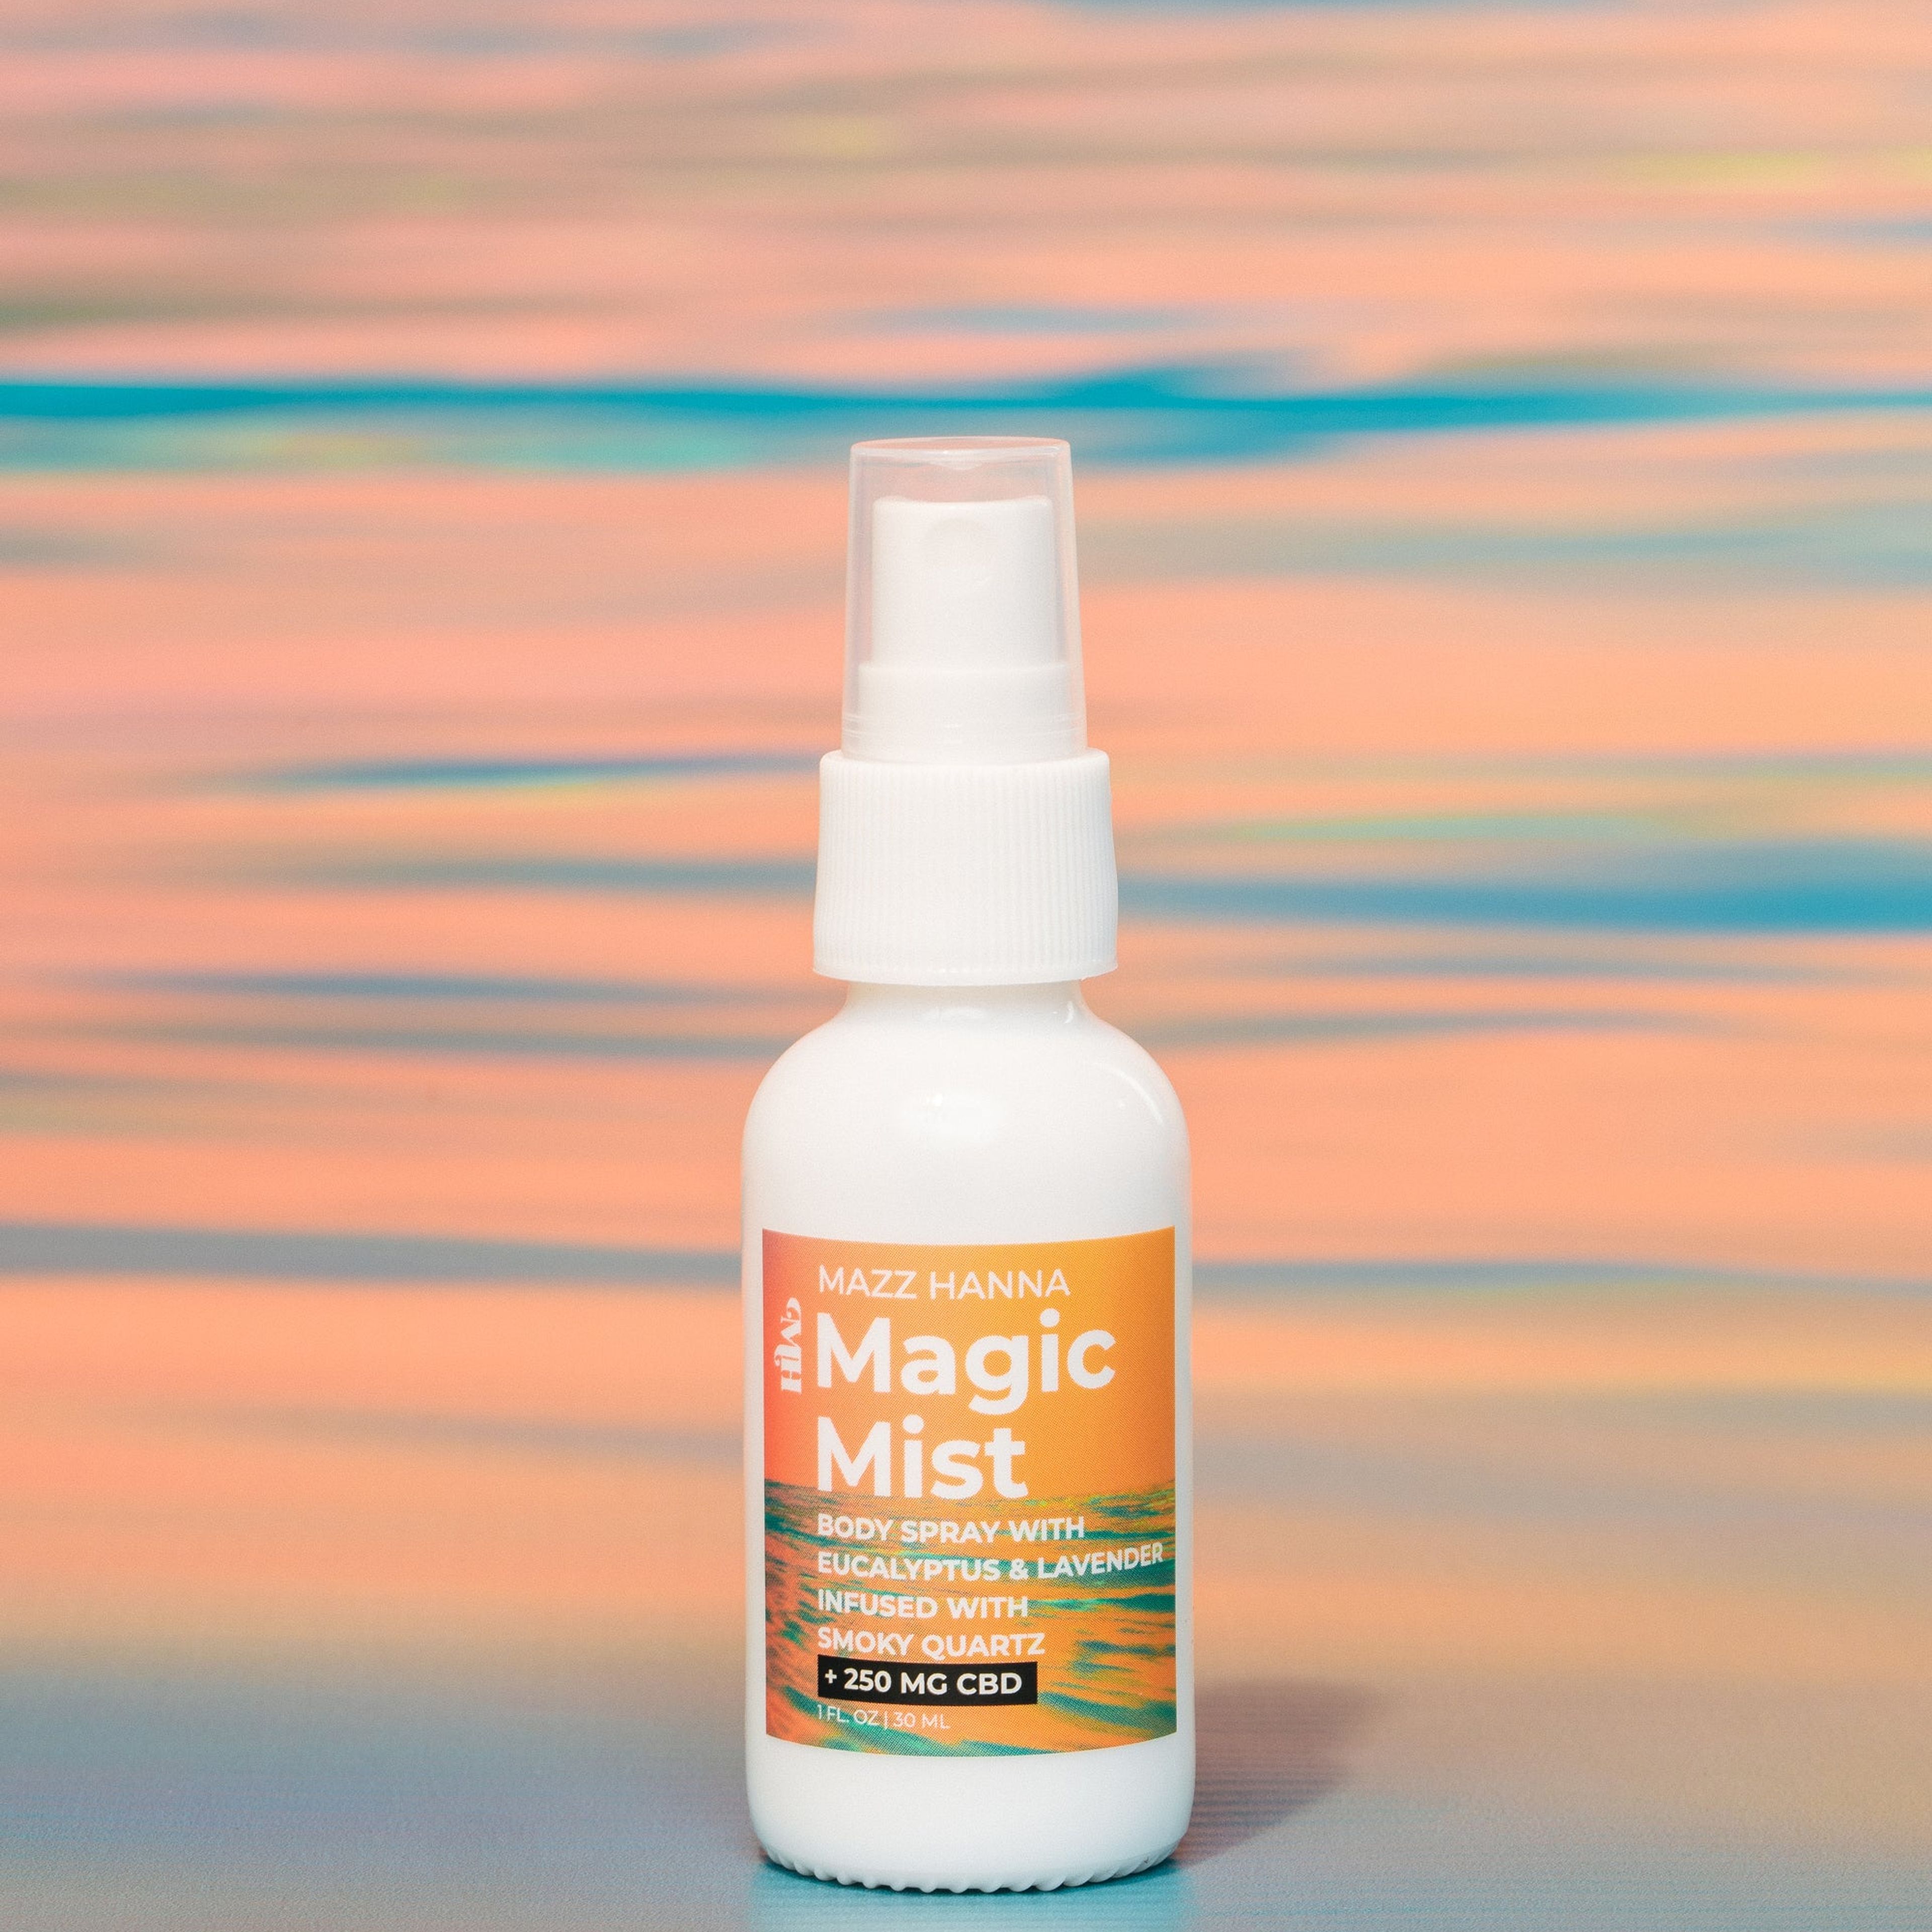 Magic Mist